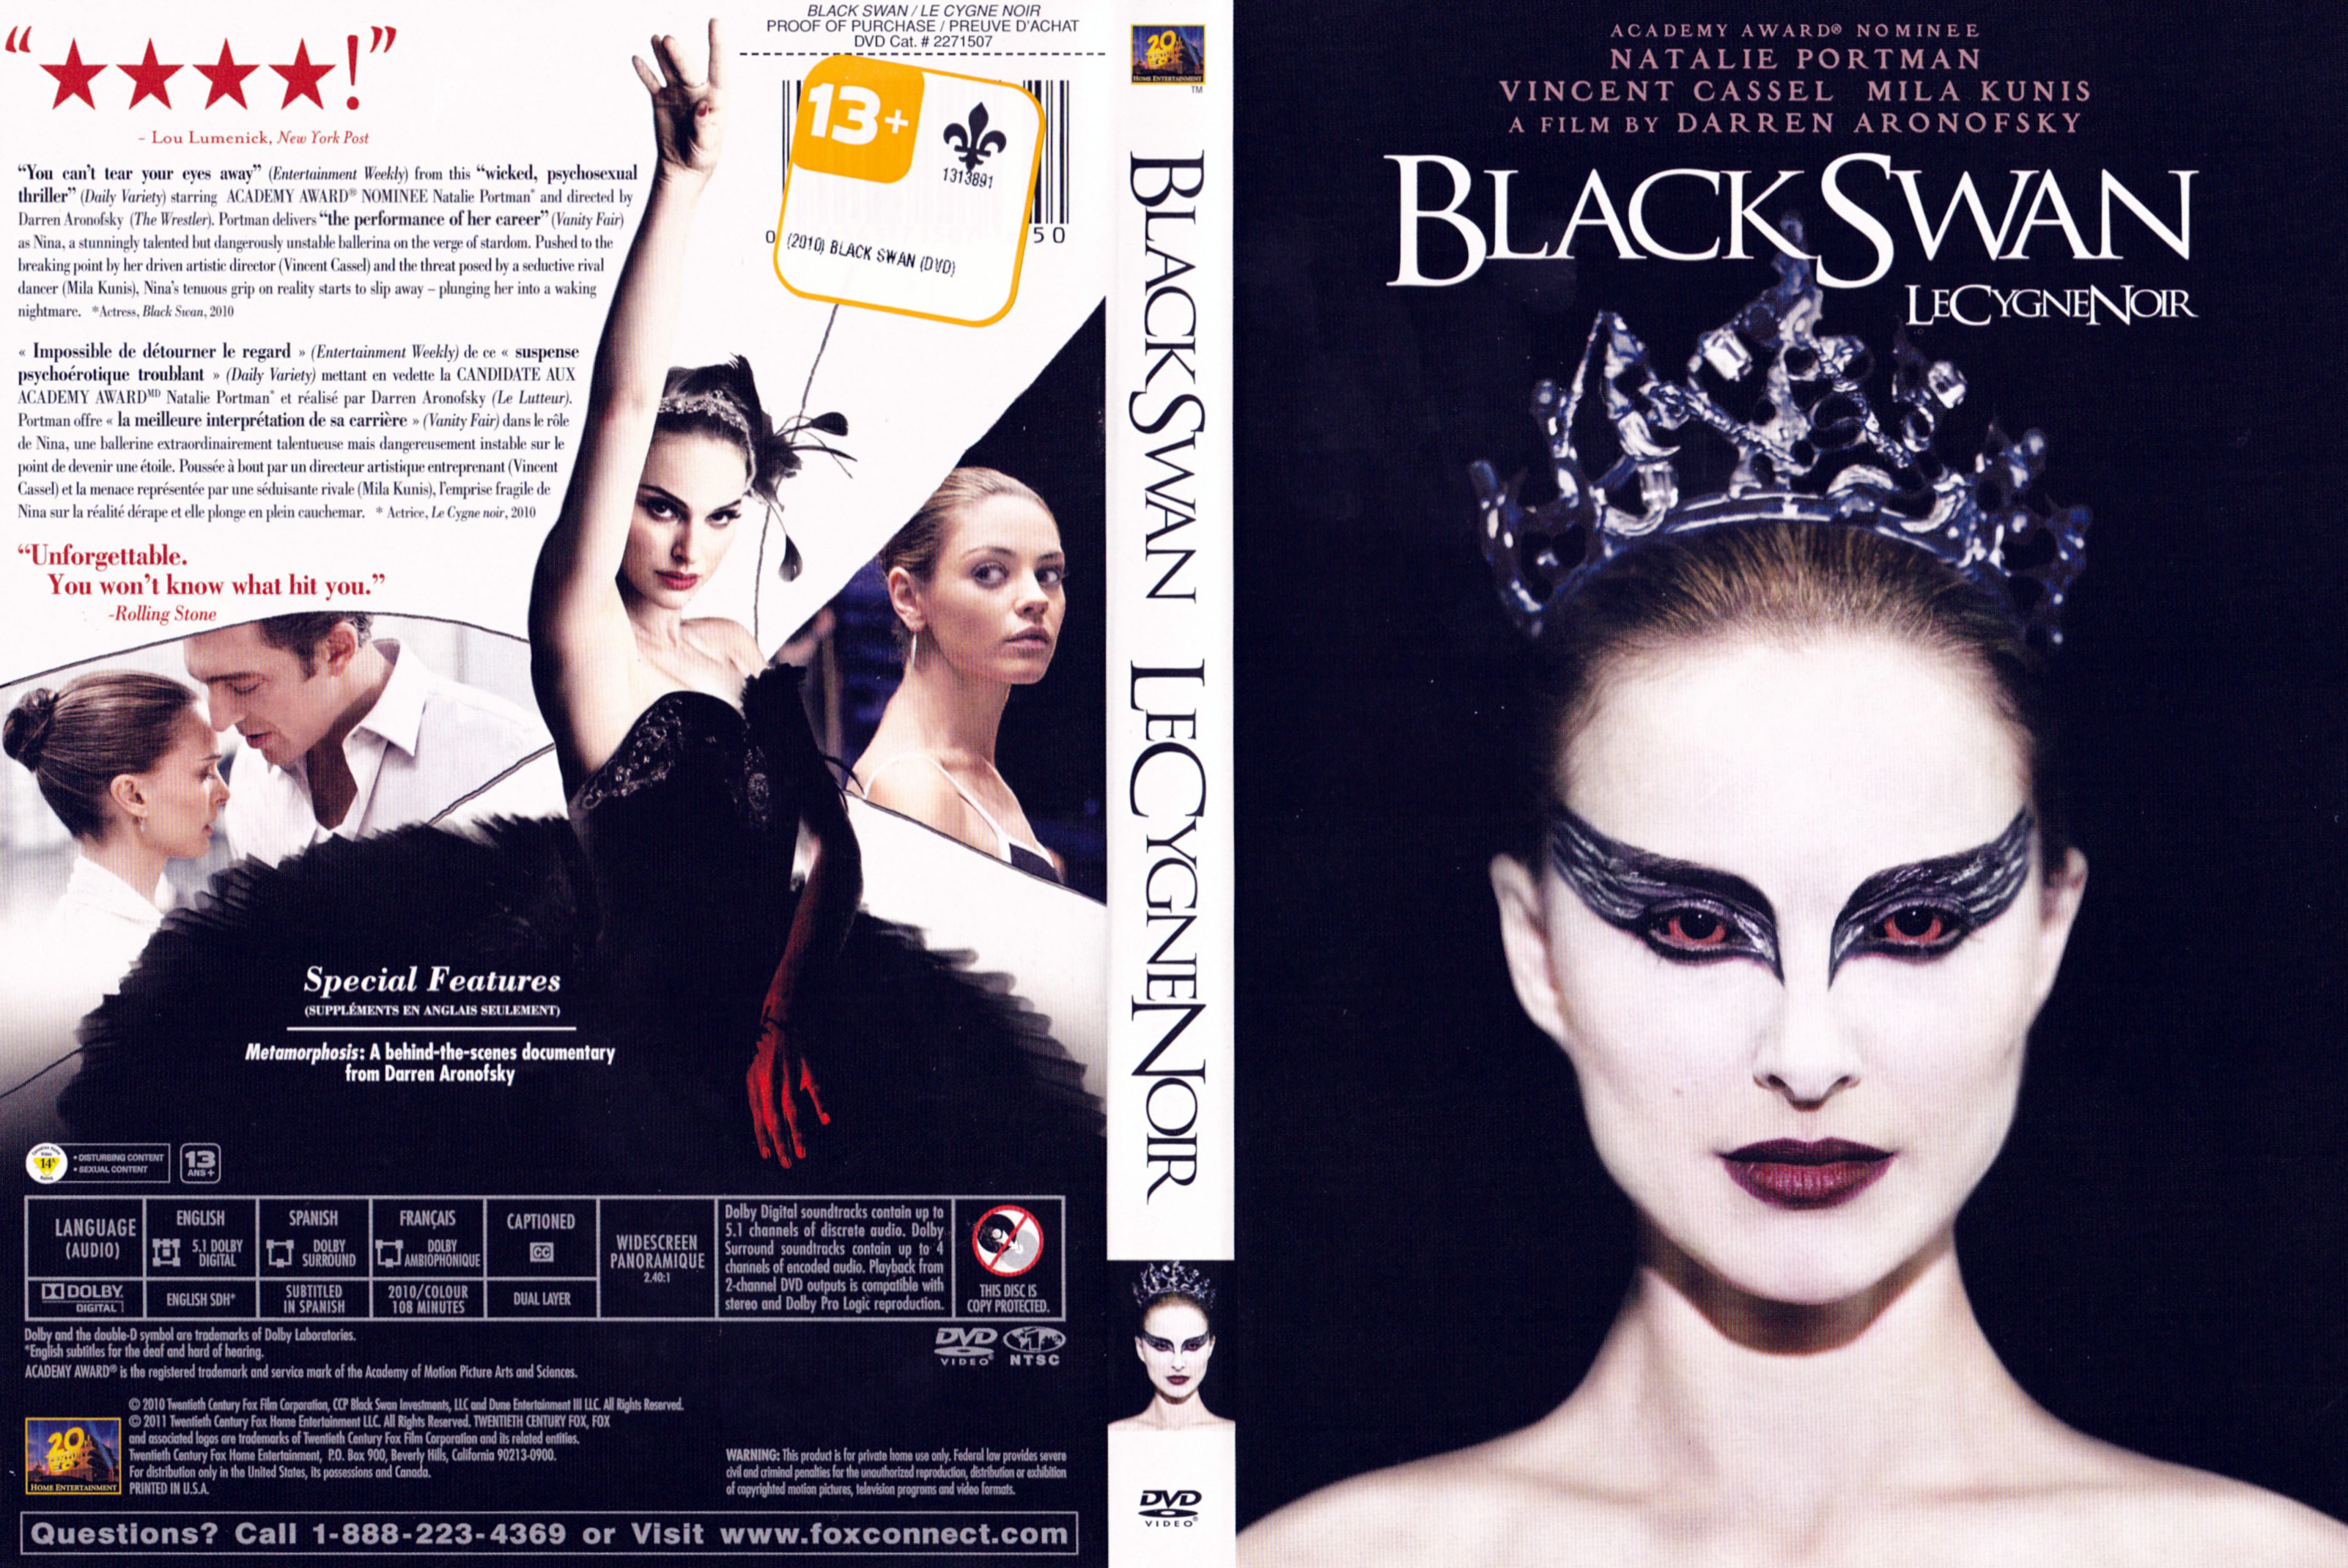 Jaquette DVD Le cygne noir - Black swan (Canadienne)